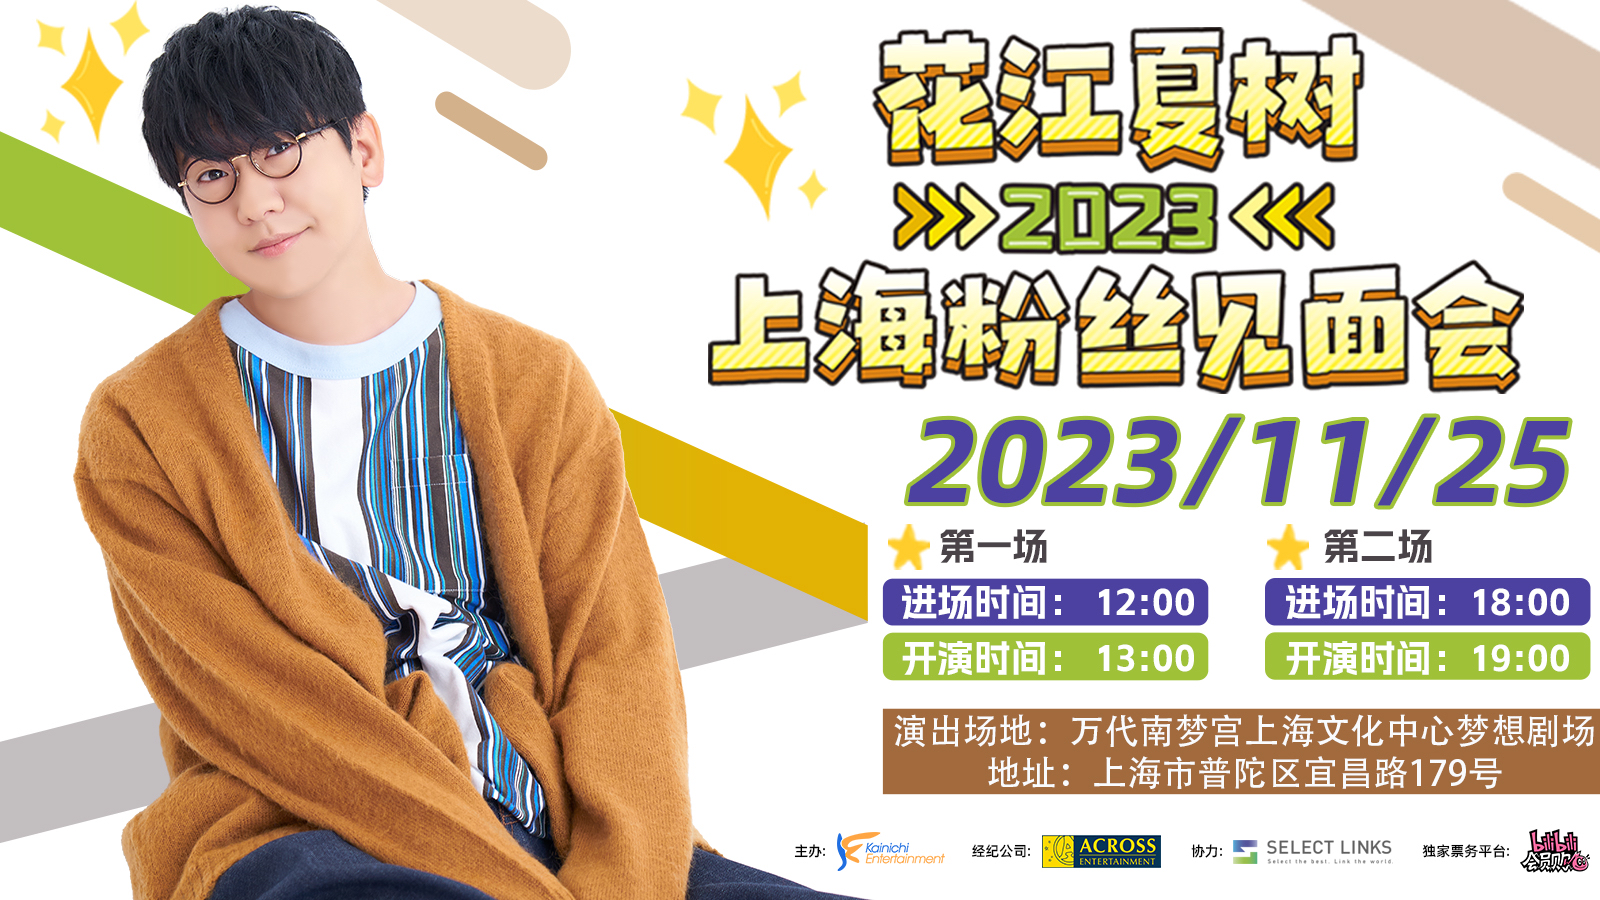 花江夏樹2023上海FANMEETING